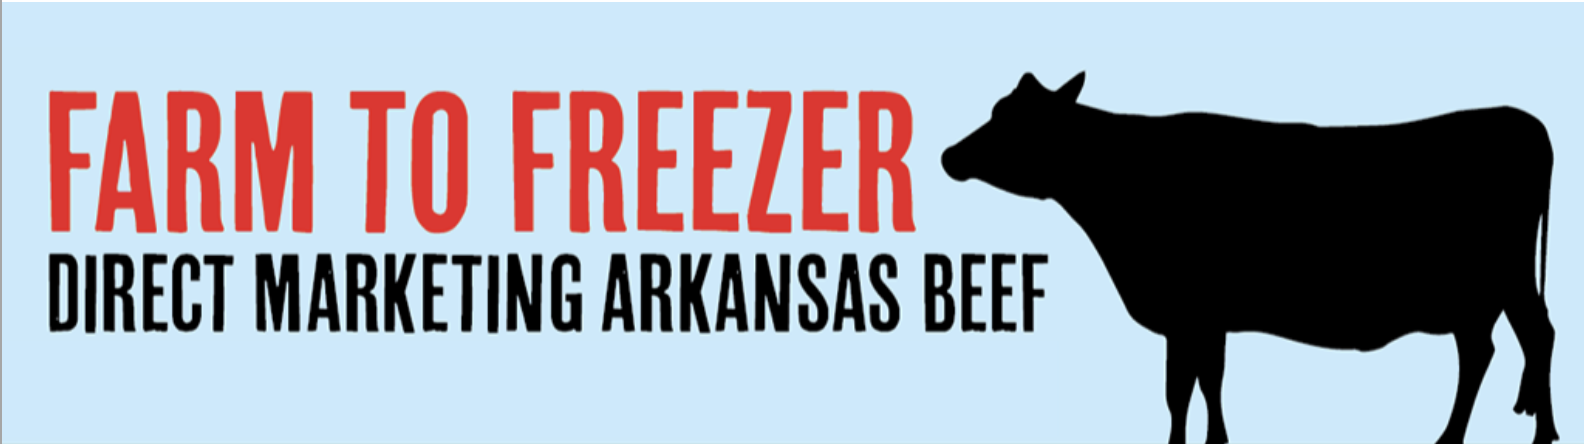 Farm to freezer banner